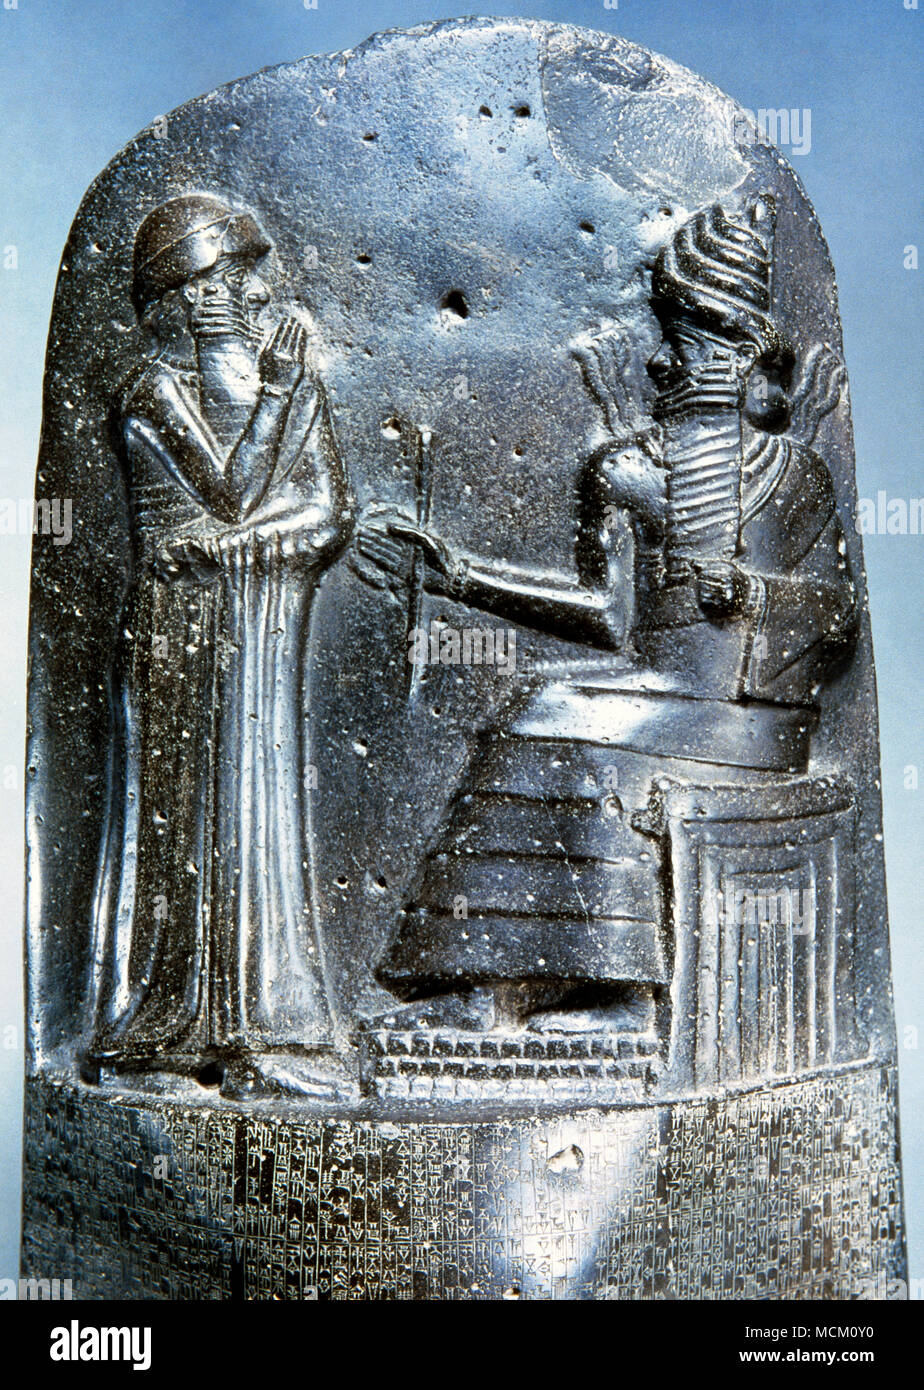 Legge il codice di Hammurabi re di Babilonia. Basalto. Il XVIII secolo A.C. Particolare rilievo: Hammurabi (in piedi) raffigurato come ricevere il suo insegne regali da Shamash, dio della giustizia. Louvre Mueum. Parigi, Francia. Foto Stock